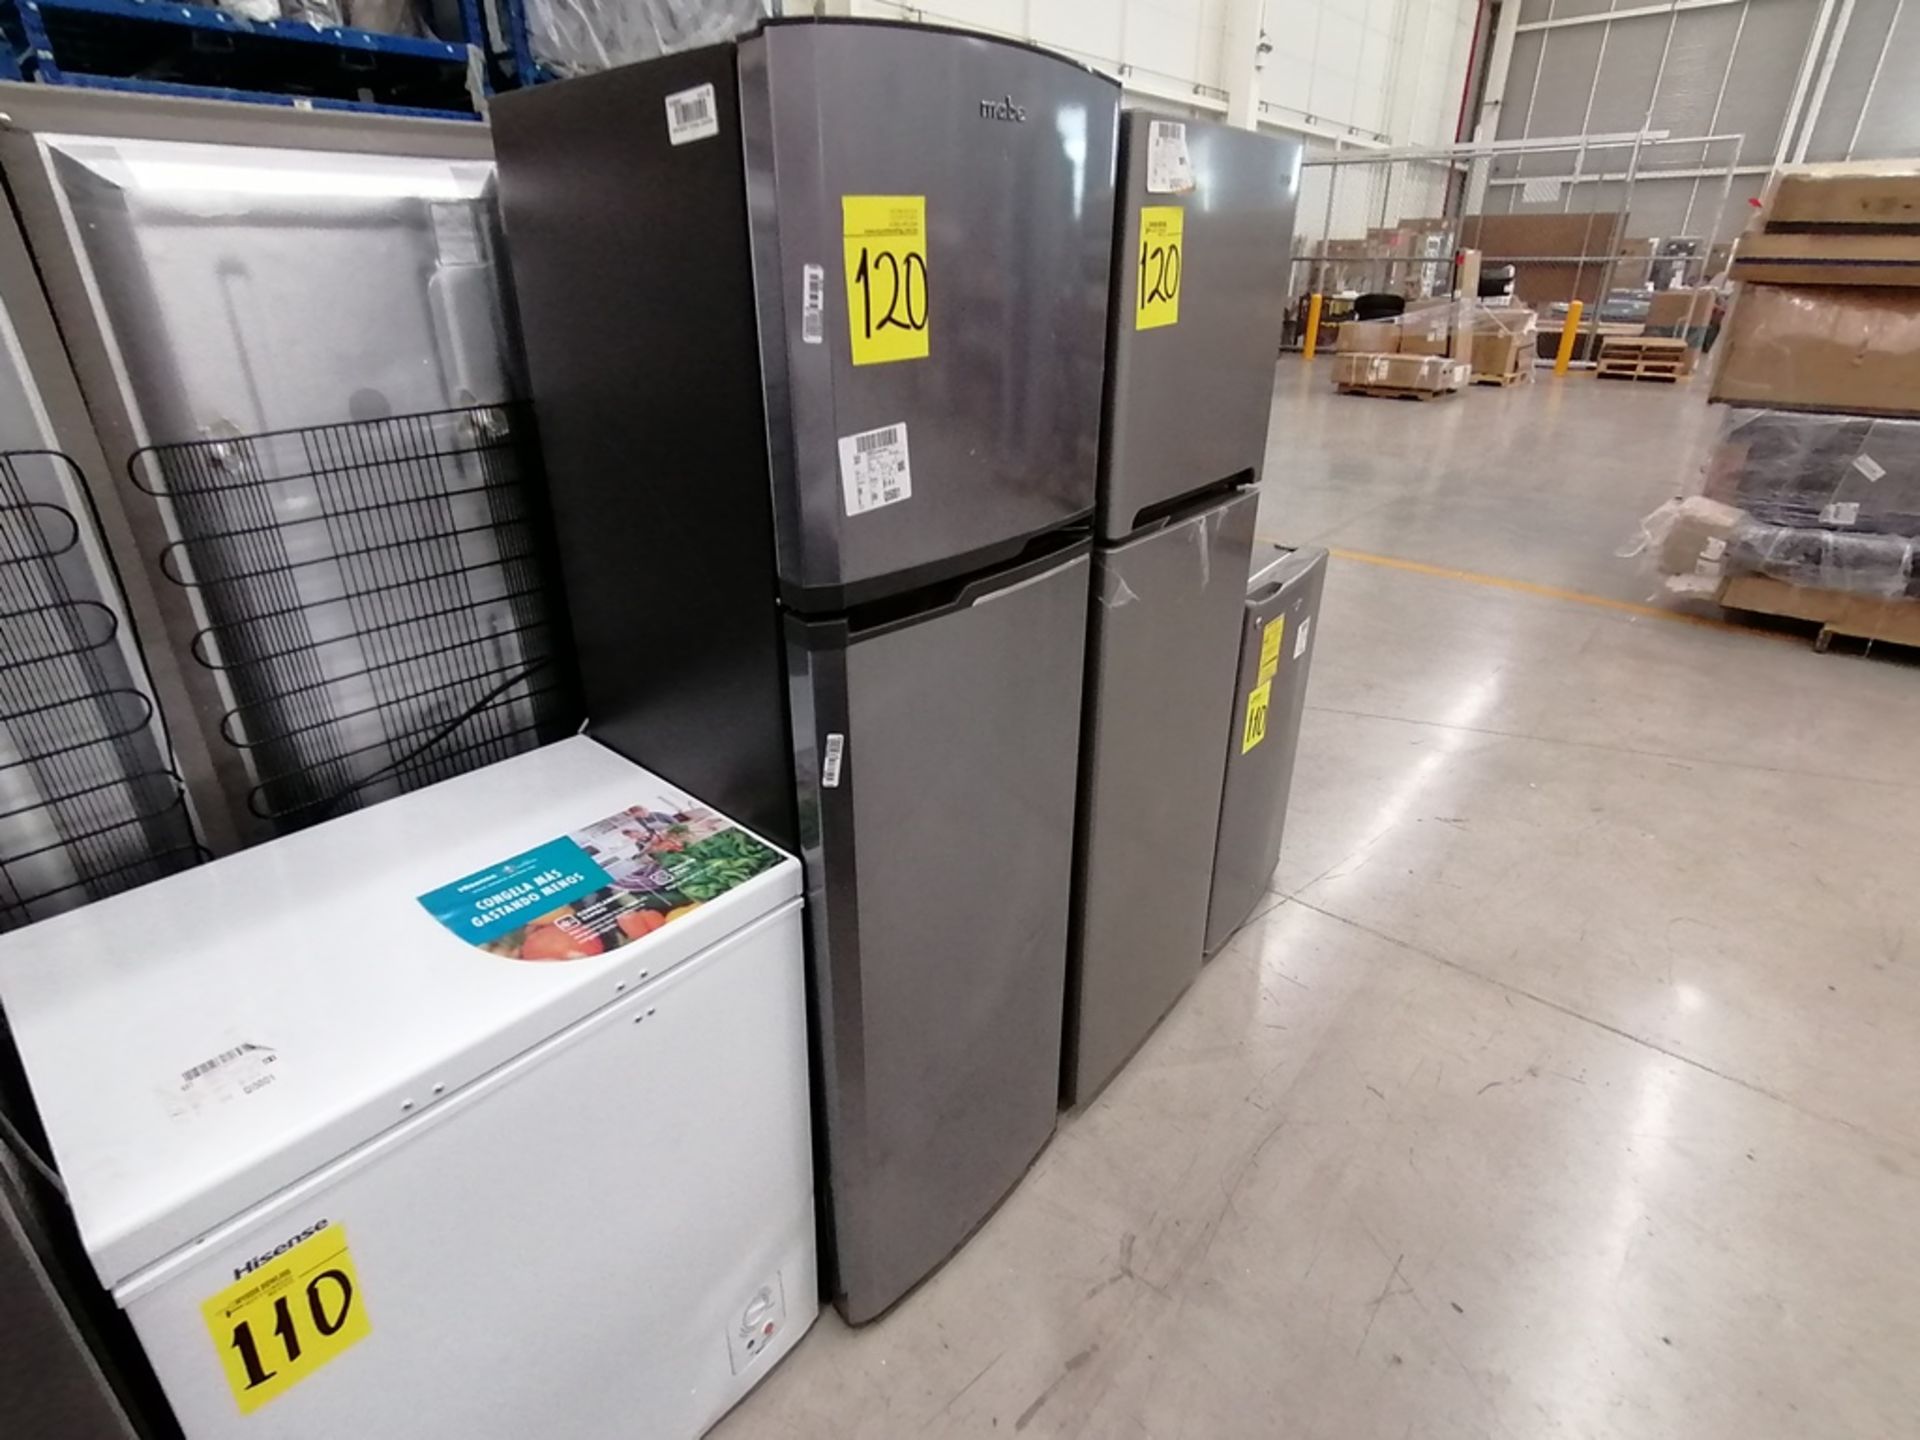 Lote de 2 refrigeradores incluye: 1 Refrigerador, Marca Mabe, Modelo RMA1025VNX, Serie 2110B623189, - Image 2 of 17